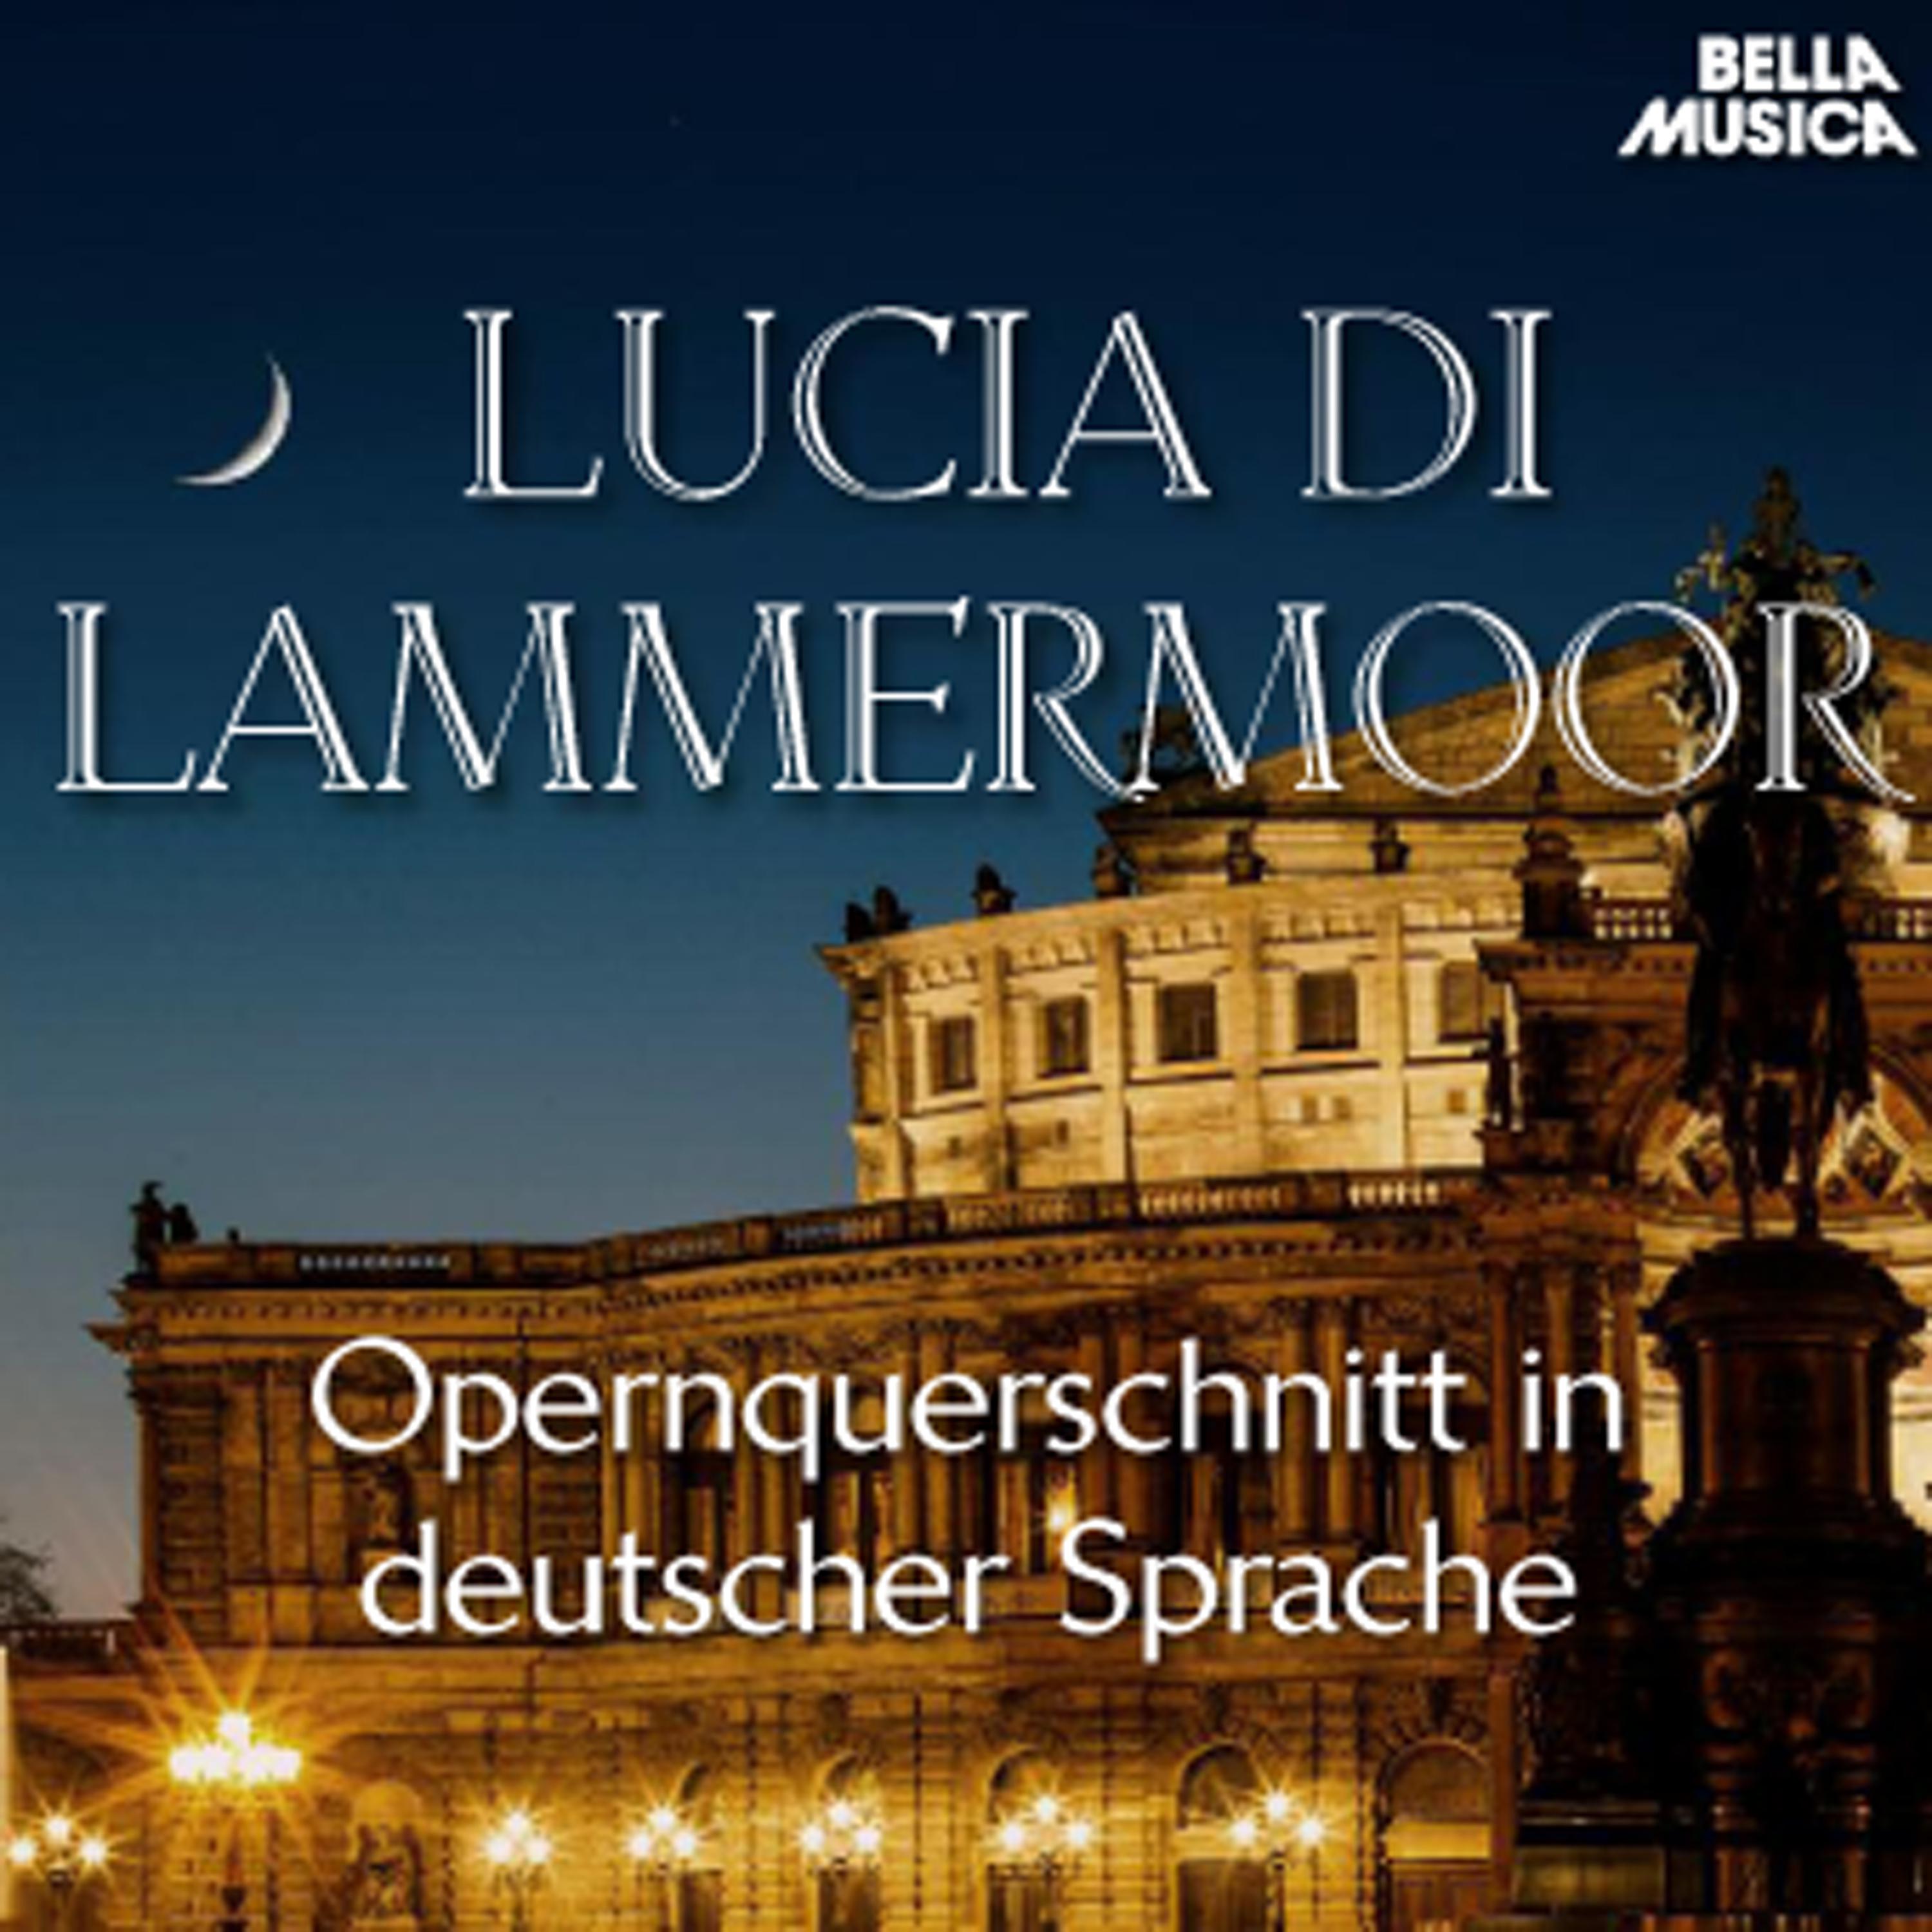 Lucia di Lammermoor: Introduction, Ihr Gr ber meiner Ahnen  Mein Herz, das dich treu geliebt